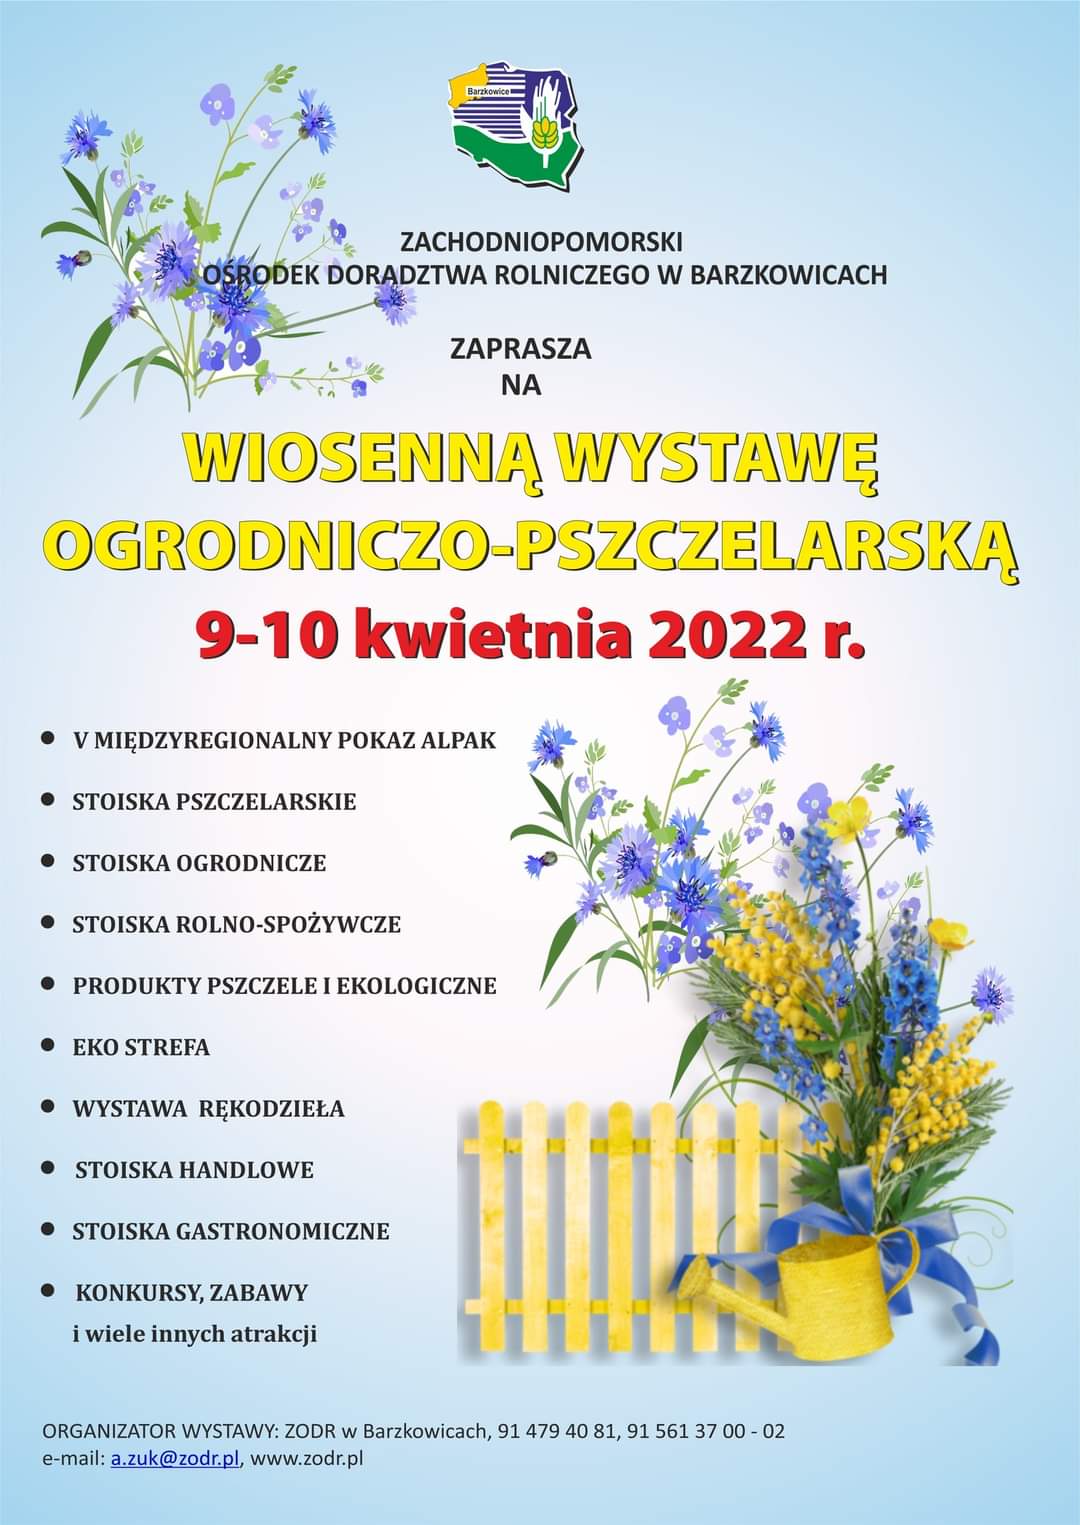 Wiosenna wystawa ogrodniczo pszczelarska w dniach 9, 10 kwietnia 2022 w Barzkowicach